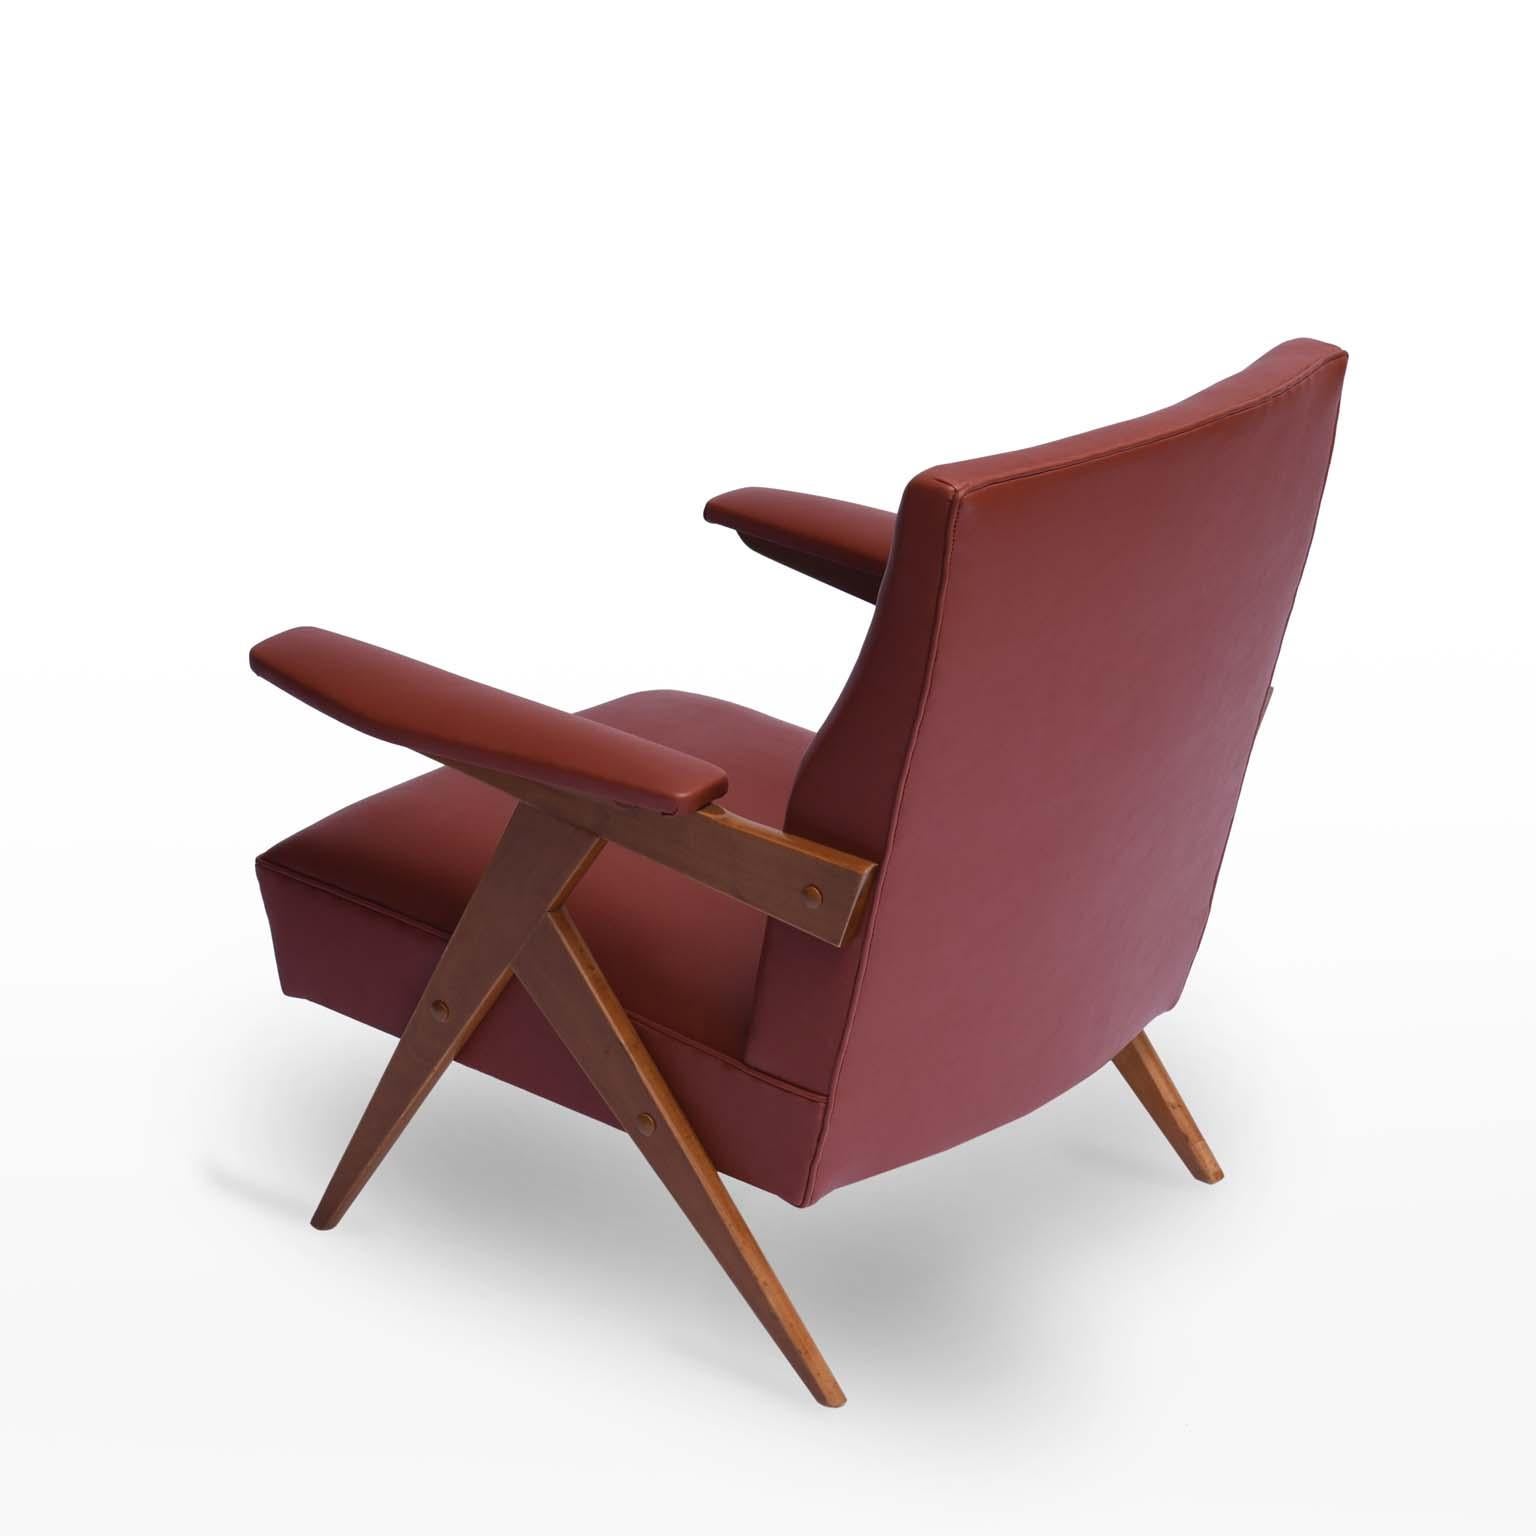 Fauteuil brésilien Zanine Caldas en bois d'ivoire, 1950s

Produit par la société Móveis Artísticos Z, ce modèle de fauteuil confortable est doté d'accoudoirs rembourrés pour un soutien total des bras de l'utilisateur.
 